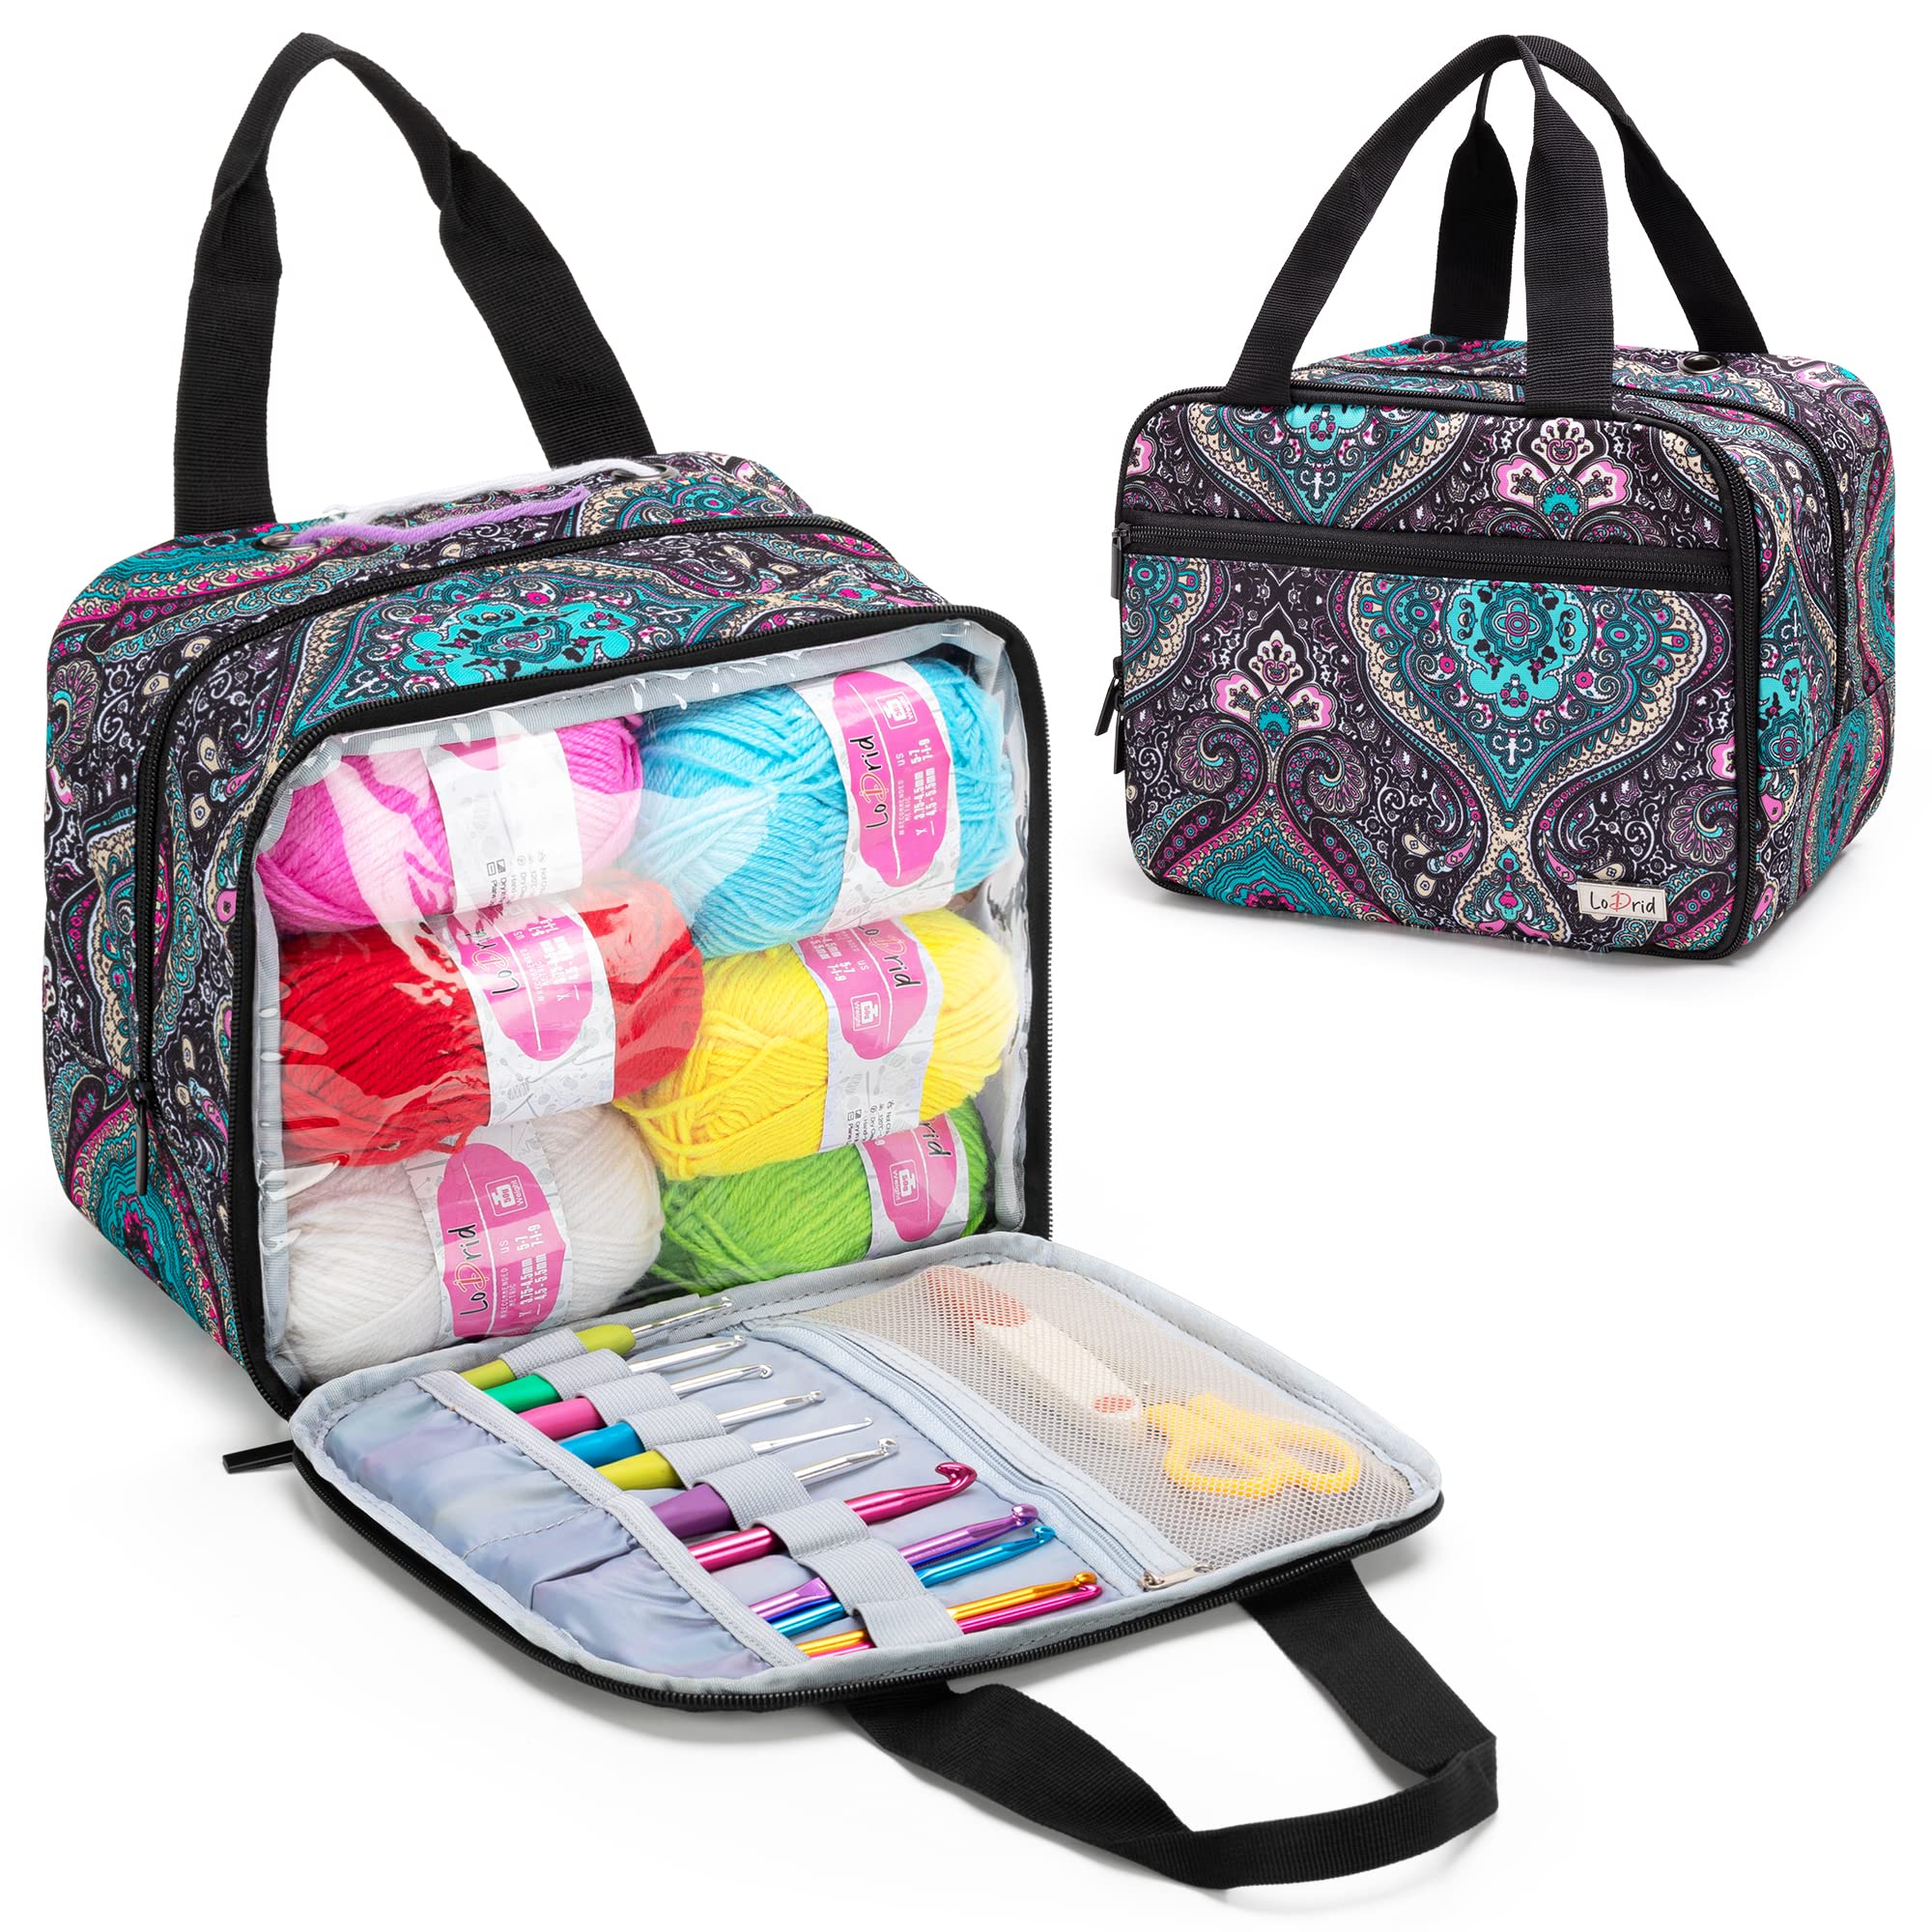 LoDrid Small Portable Knitting Bag, Crochet Yarn Storage Bag, Knitting Tote  Bag for Knitting Starter Kit, Travel Yarn Organizer for Yarn & Crochet  Supplies for Beginner, Kid & Adult, Totem (Bag Only)